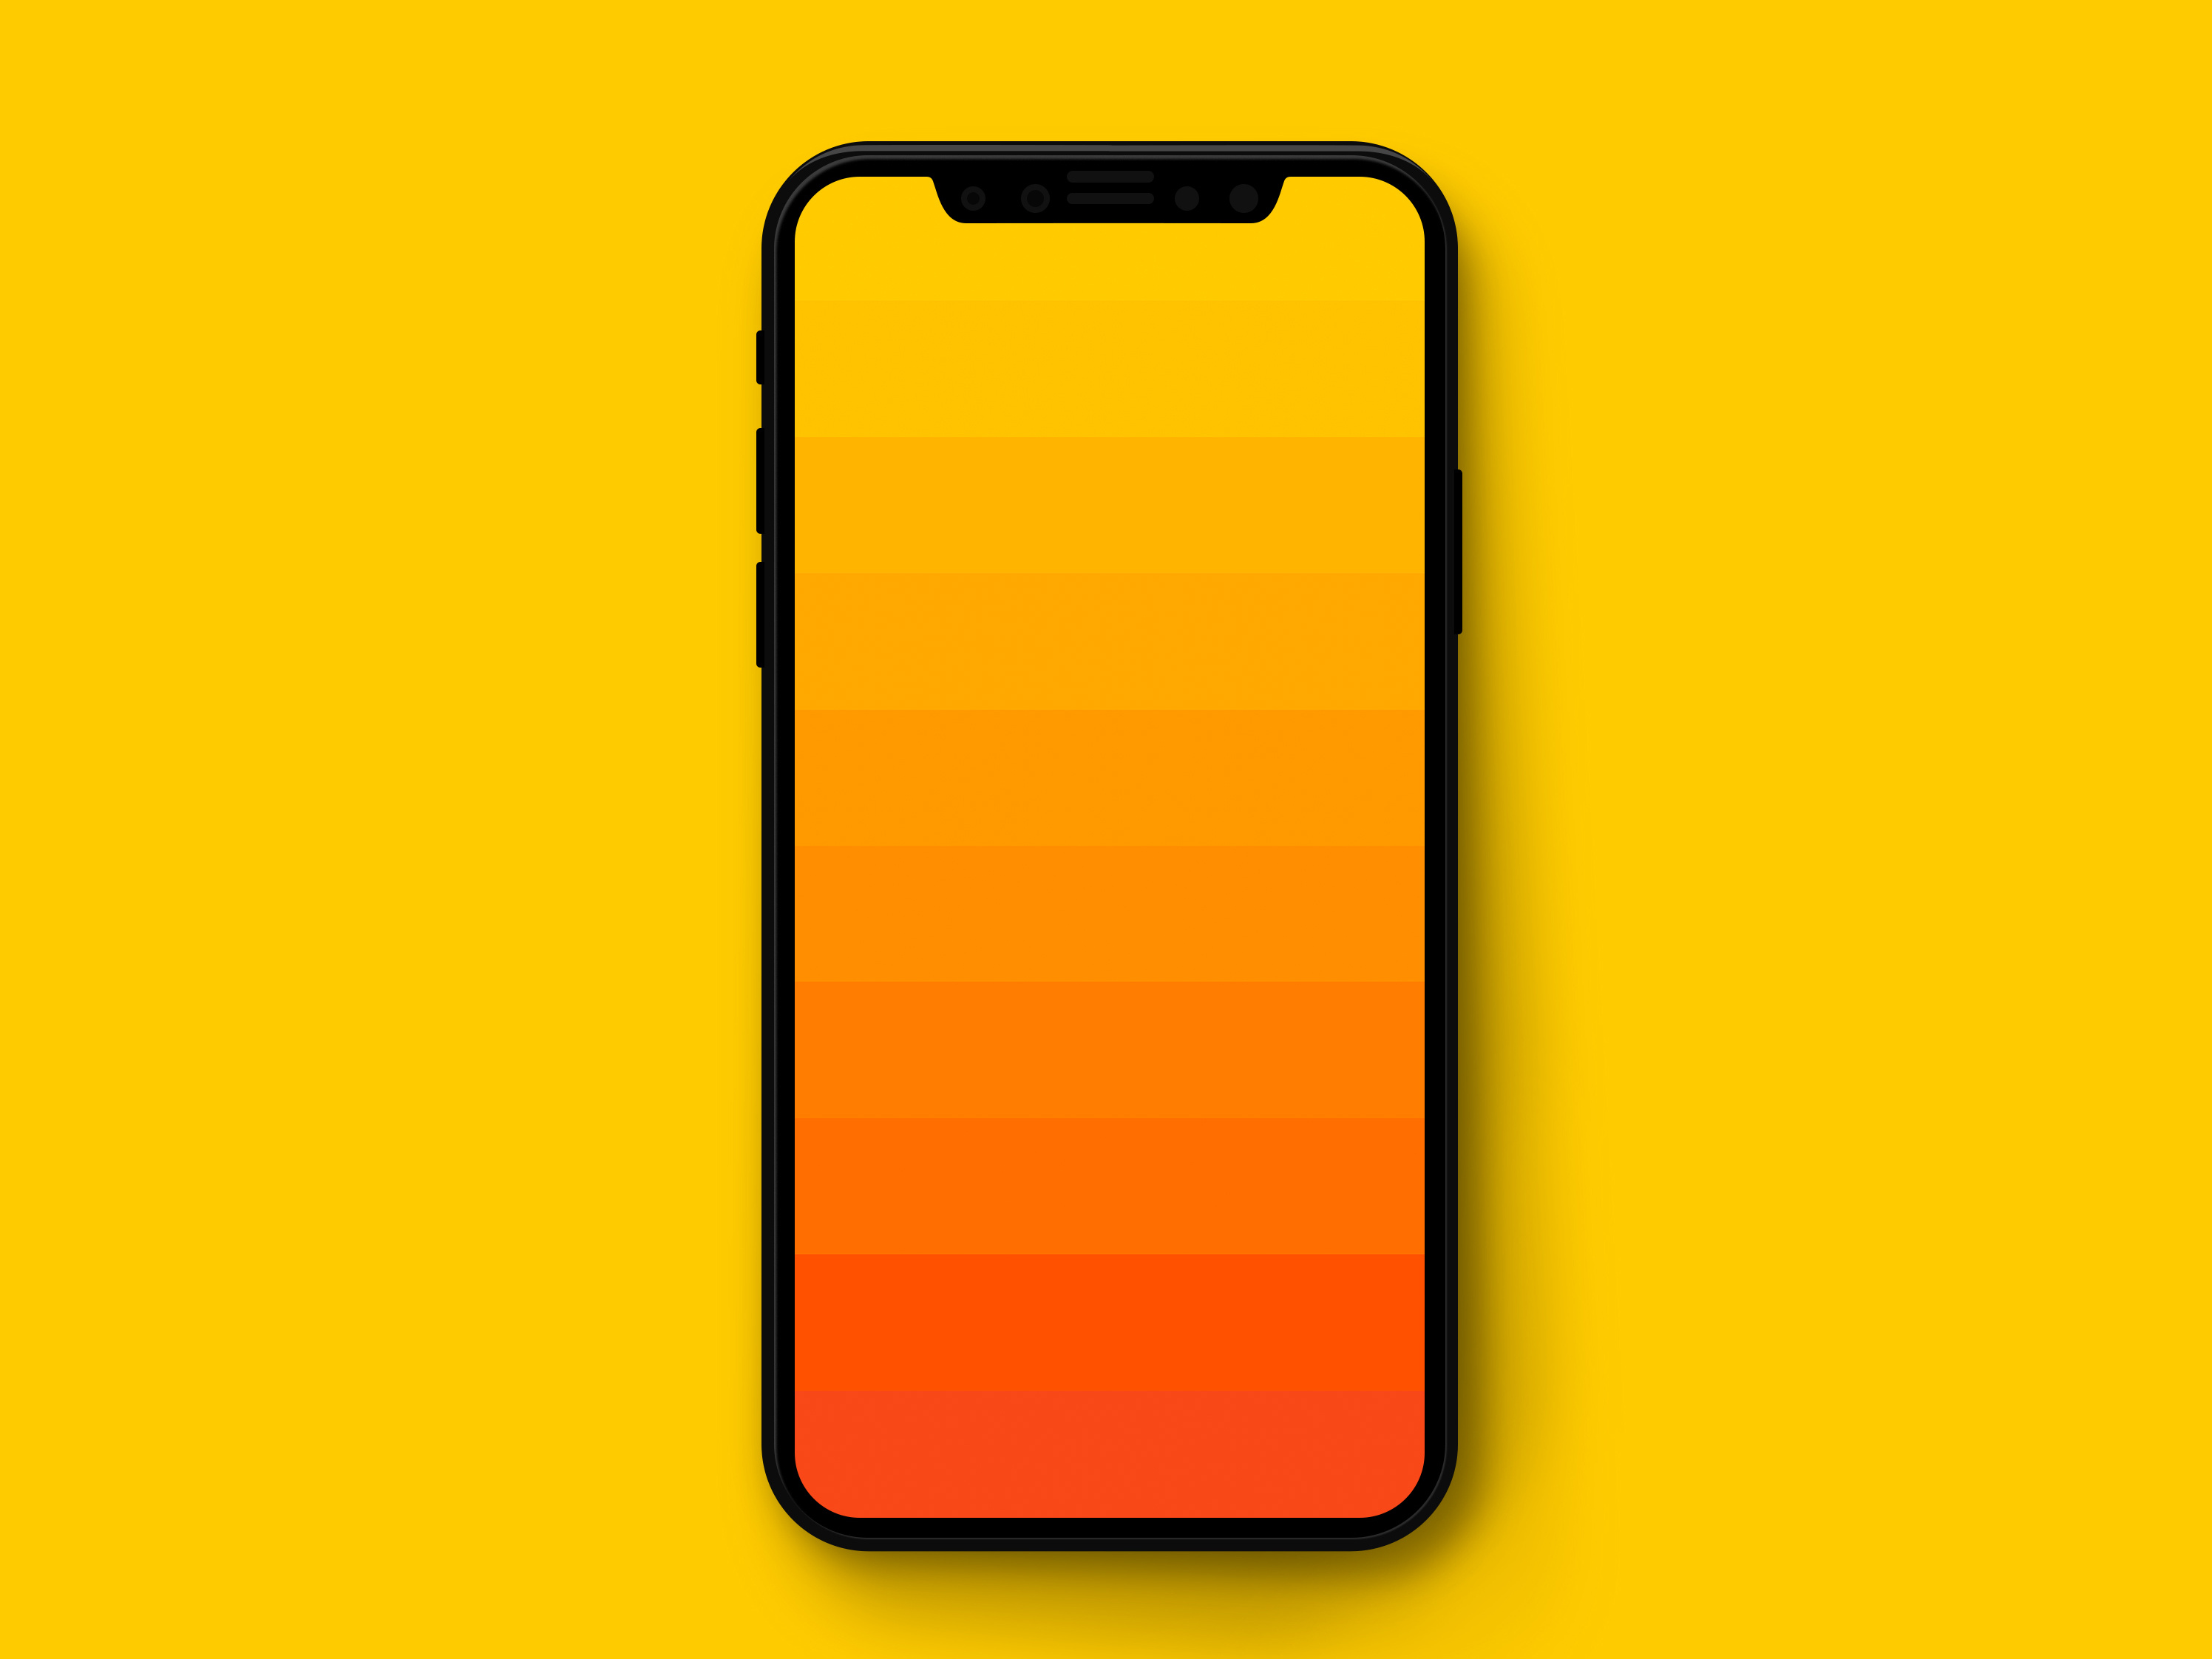 Orange Gradient Iphone Wallpapers